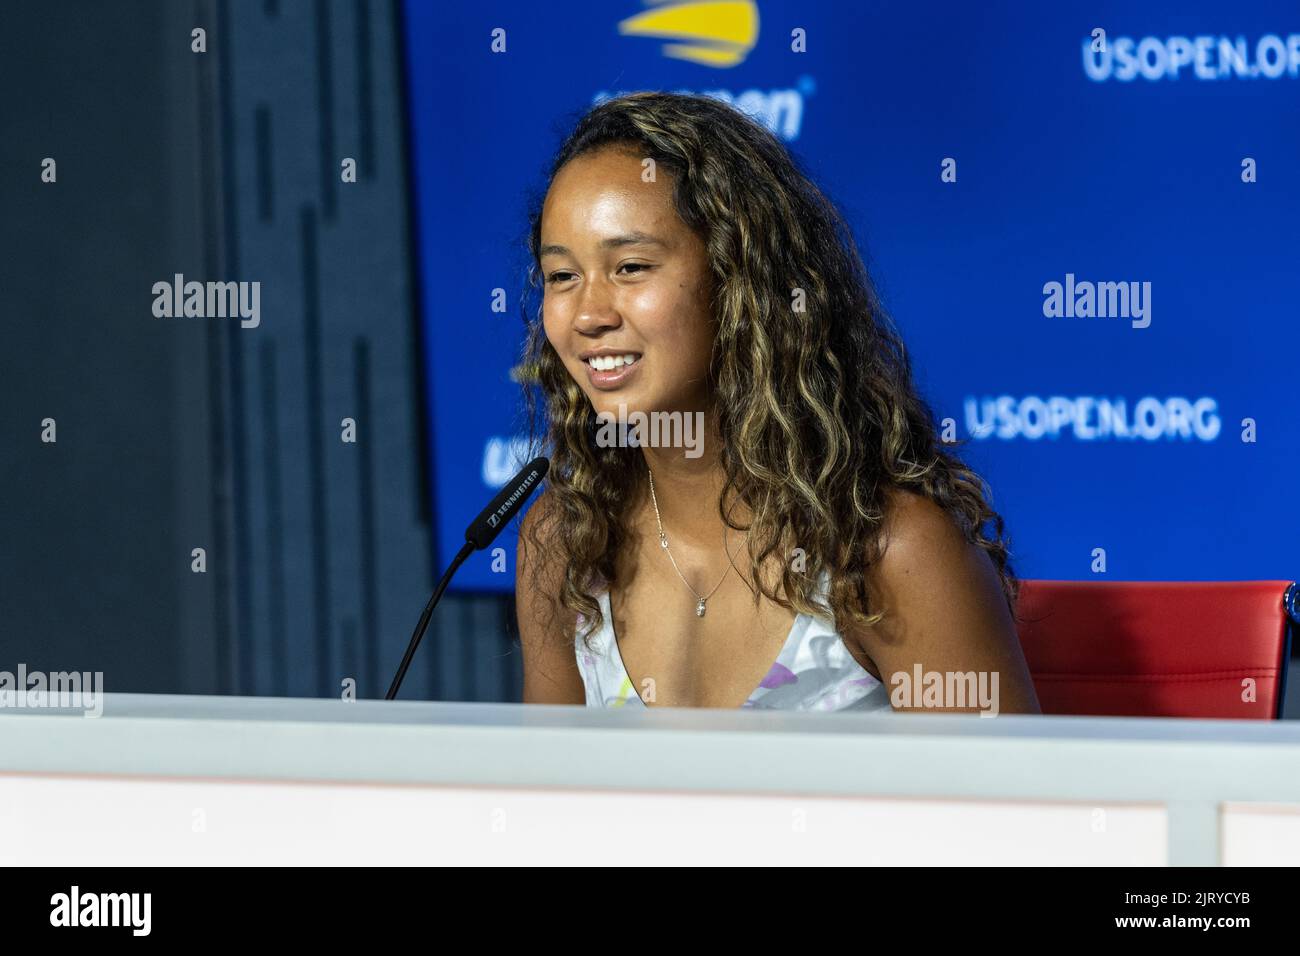 New York, NY - 26 août 2022: Leylah Fernandez du Canada assiste aux États-Unis Open Player Media Day disponibilité au centre de presse du Centre national de tennis de l'USTA Billie Jean King Banque D'Images